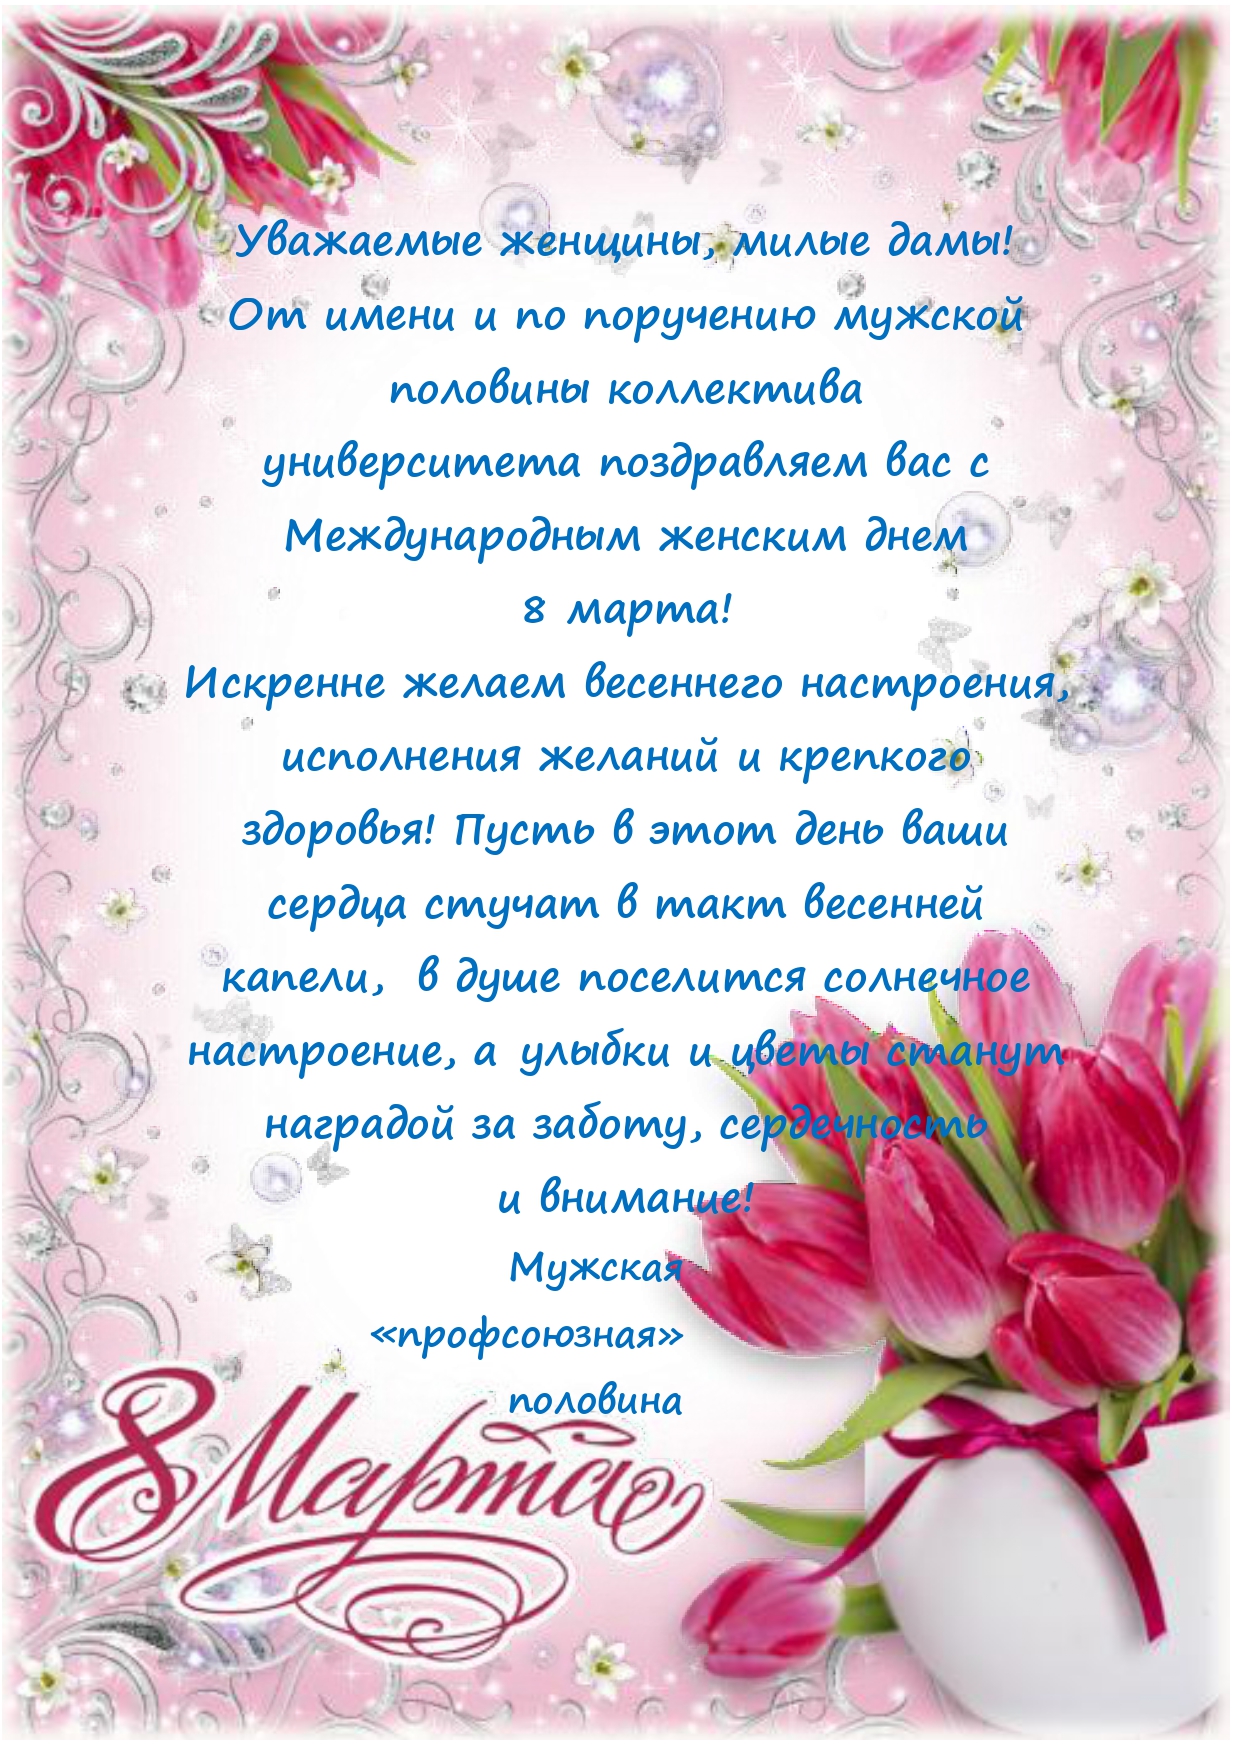 Поздравление на чувашском языке с юбилеем. Поздравление с 8 мартом от профсоюза.